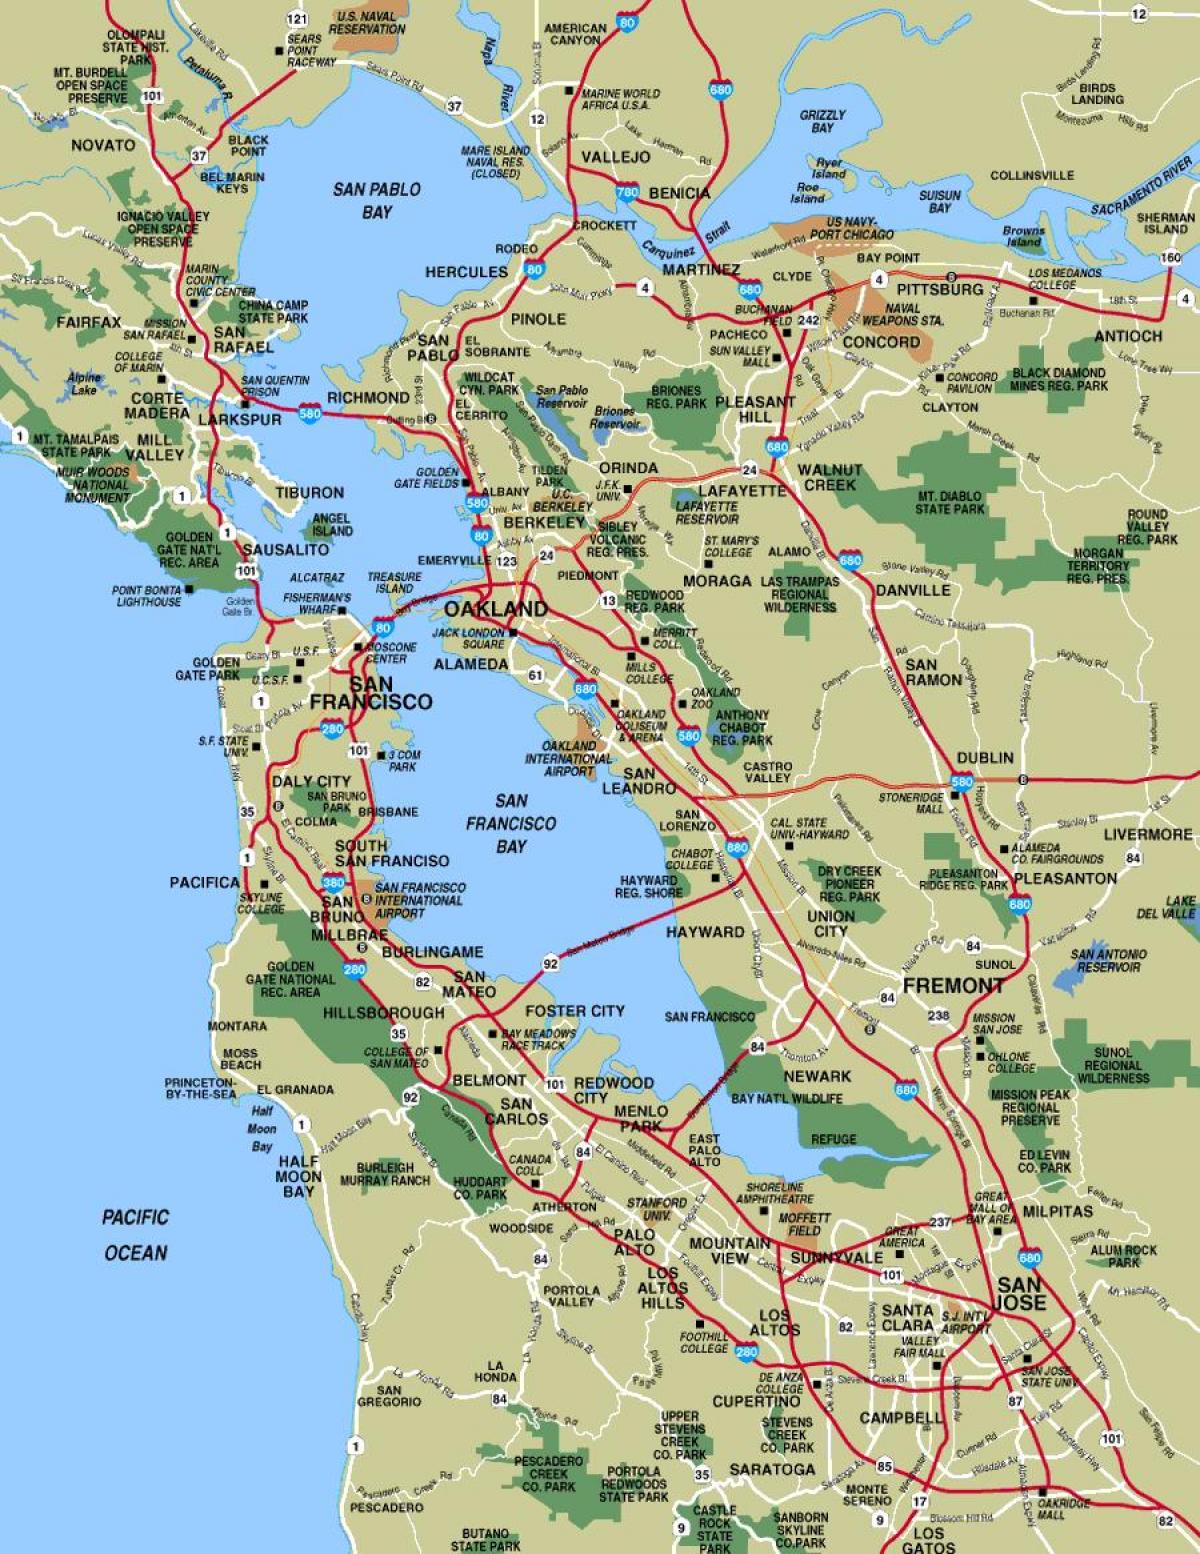 図よりサンフランシスコ地区